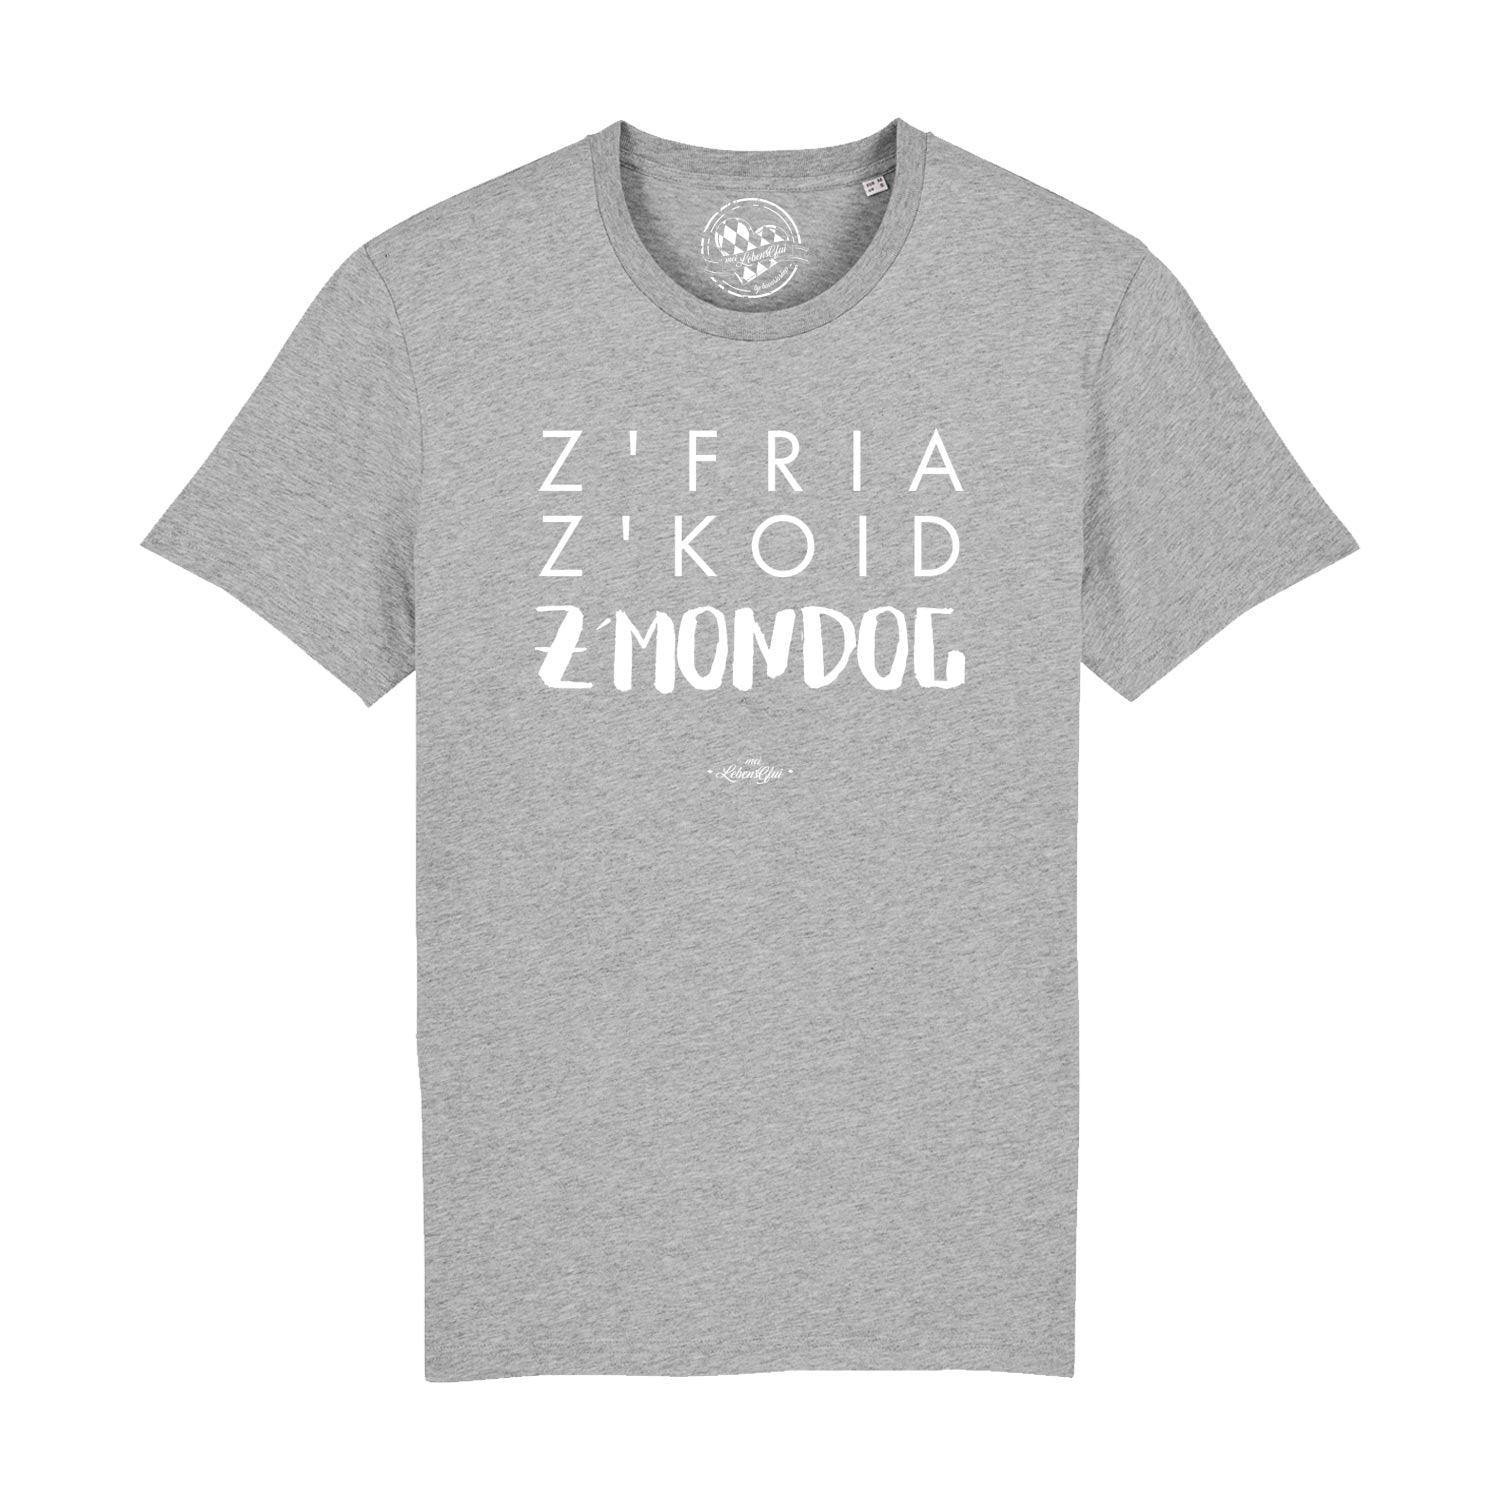 Herren T-Shirt "Z'fria z'koid z'Mondog..." - bavariashop - mei LebensGfui